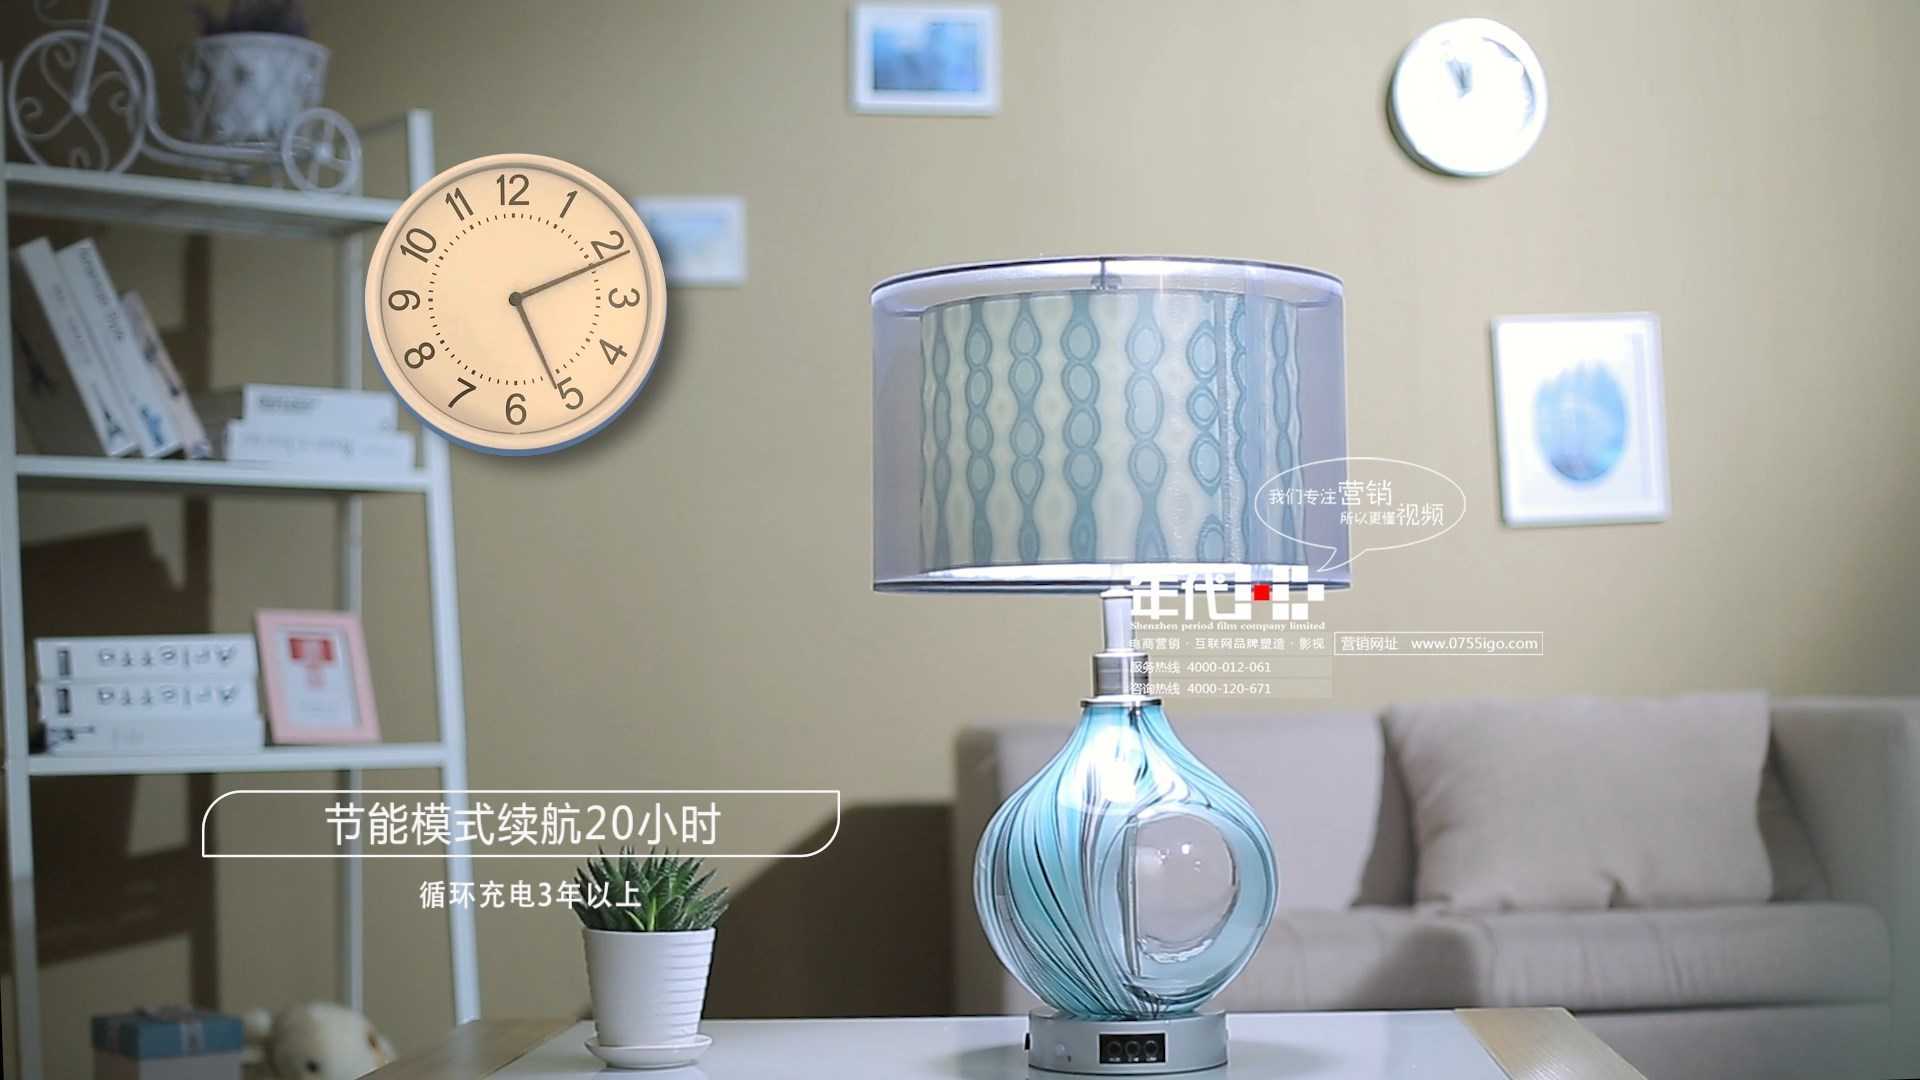 广东星美灿照明科技股份有限公司《灯在家在》系列 智能声控灯展示片